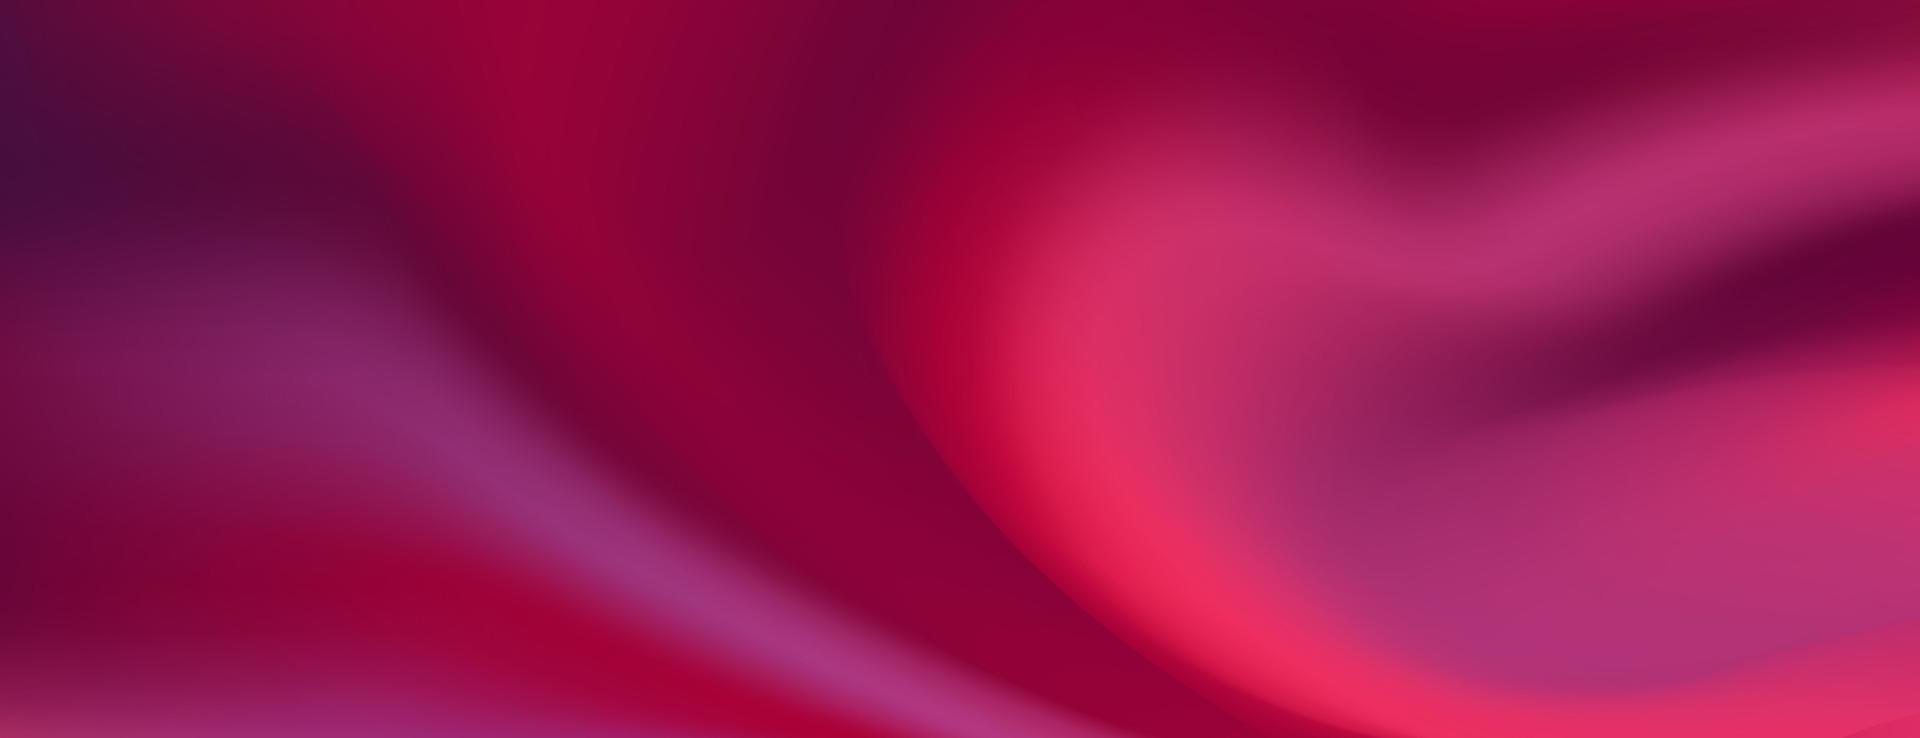 Banner-Vorlage für rote, rosa, blaue Farbverlaufsunschärfe. vektor